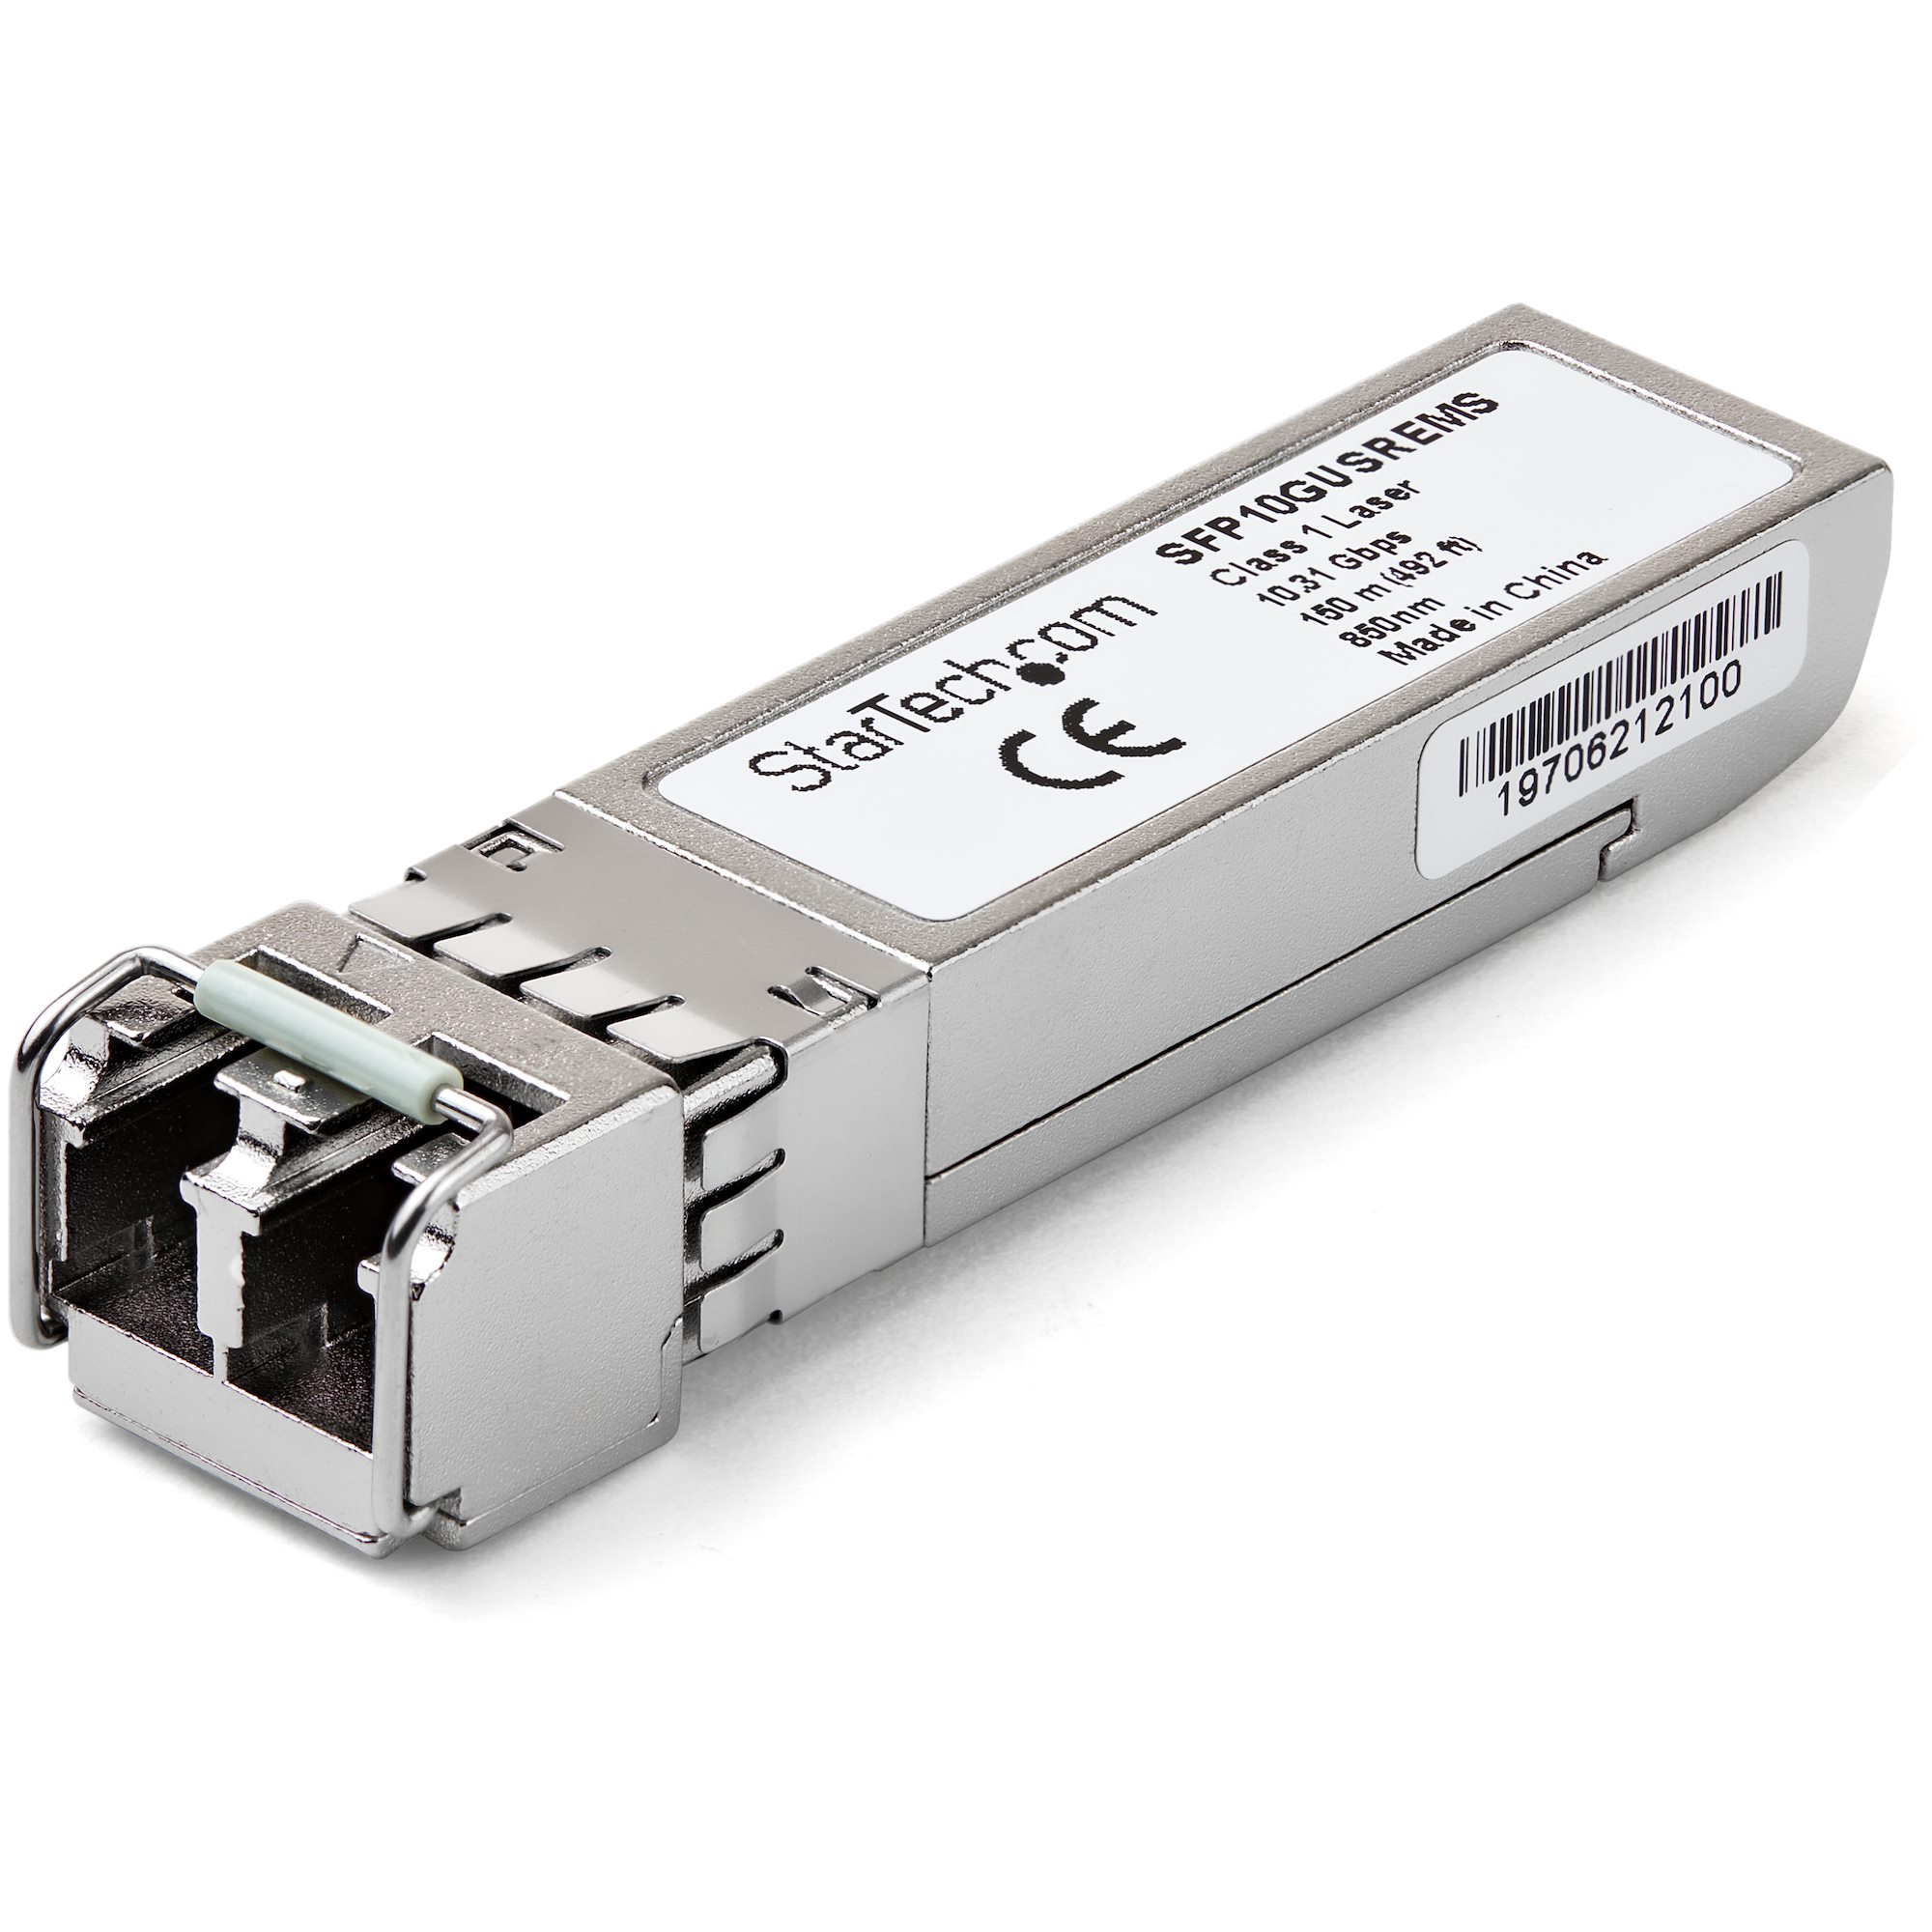 Transceiver Module Genuine Cisco SFP-10G-USR 10GBASE-SR 850nm SFP 